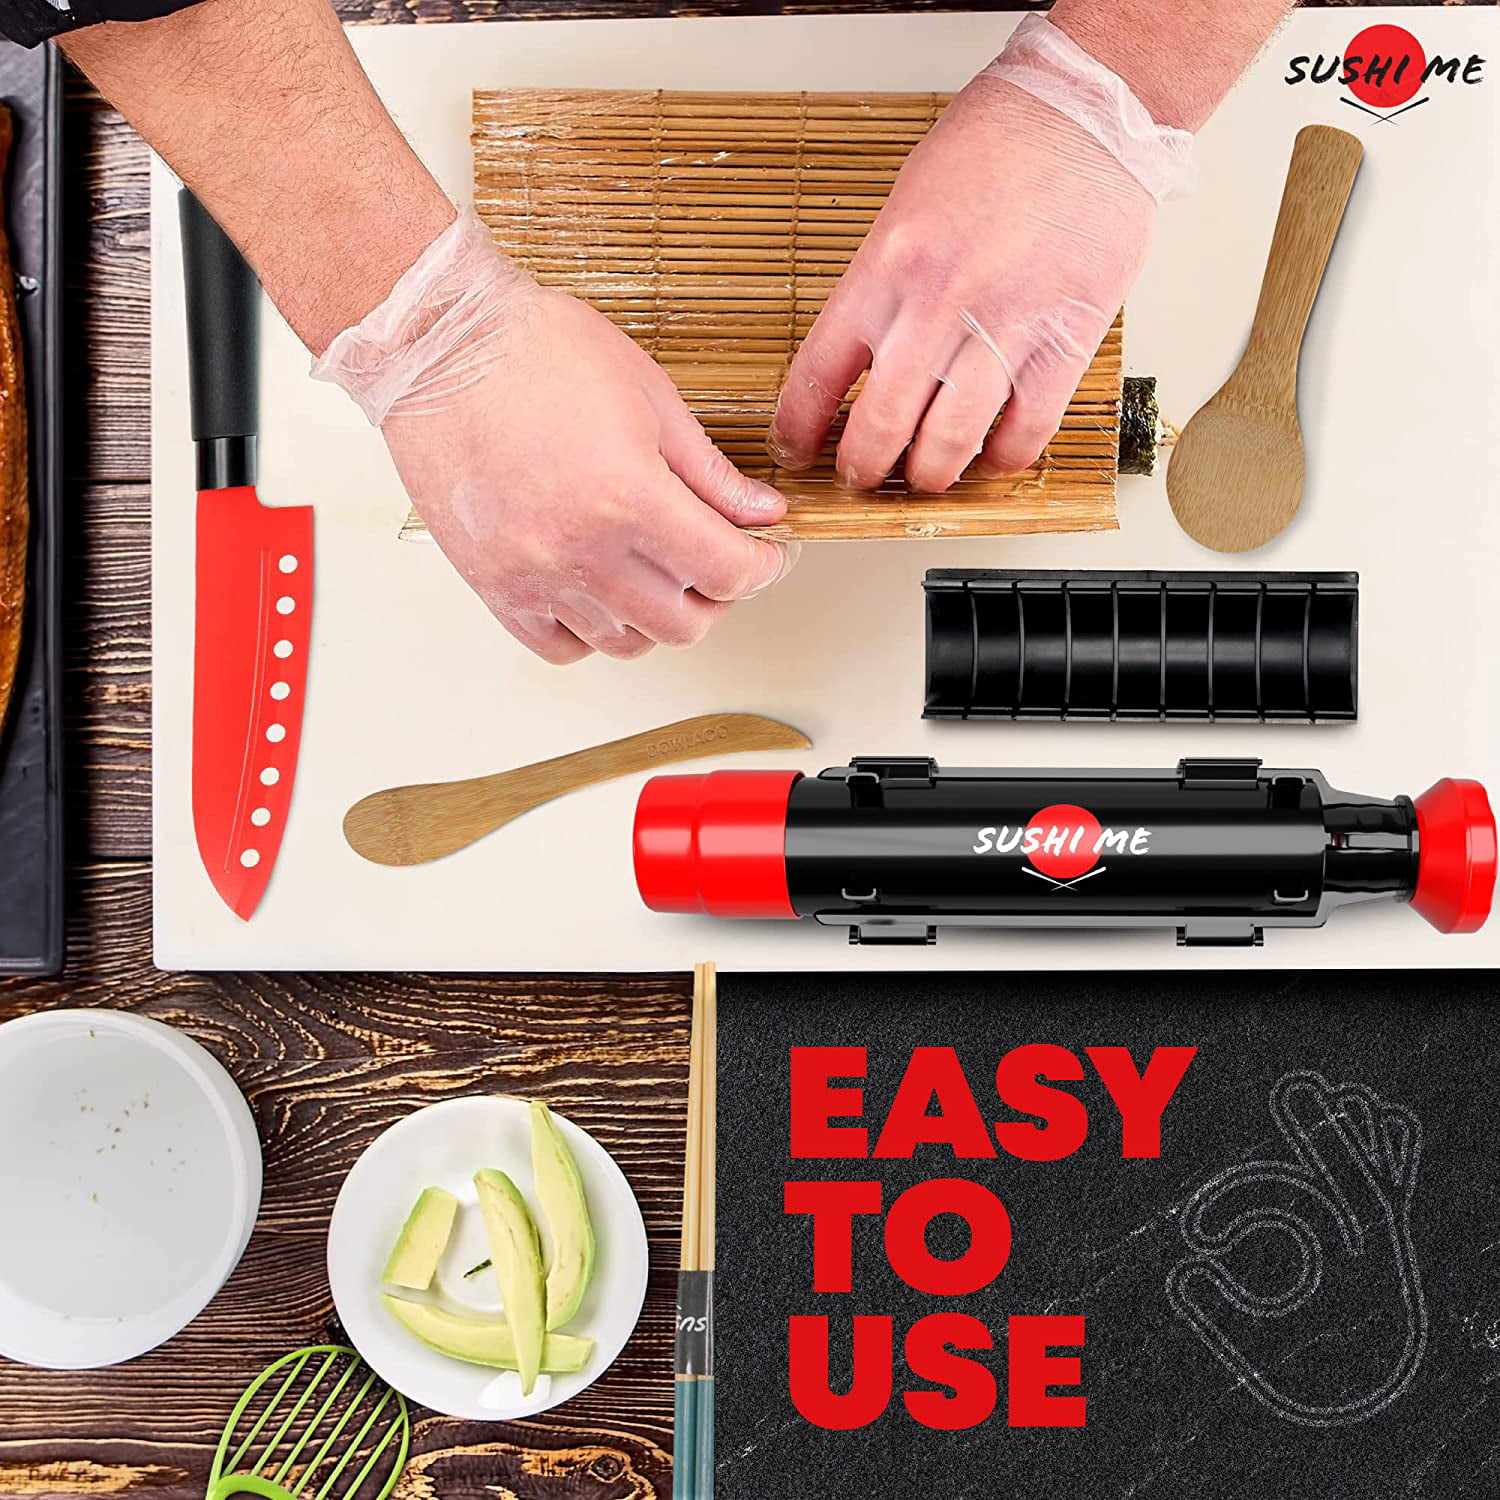 ISSEVE Sushi Making Kit/Sushi Bazooka Maker with Bamboo Mats and  Chopsticks, Paddle, Spreader, Sushi Knife, DIY Sushi Roller Machine